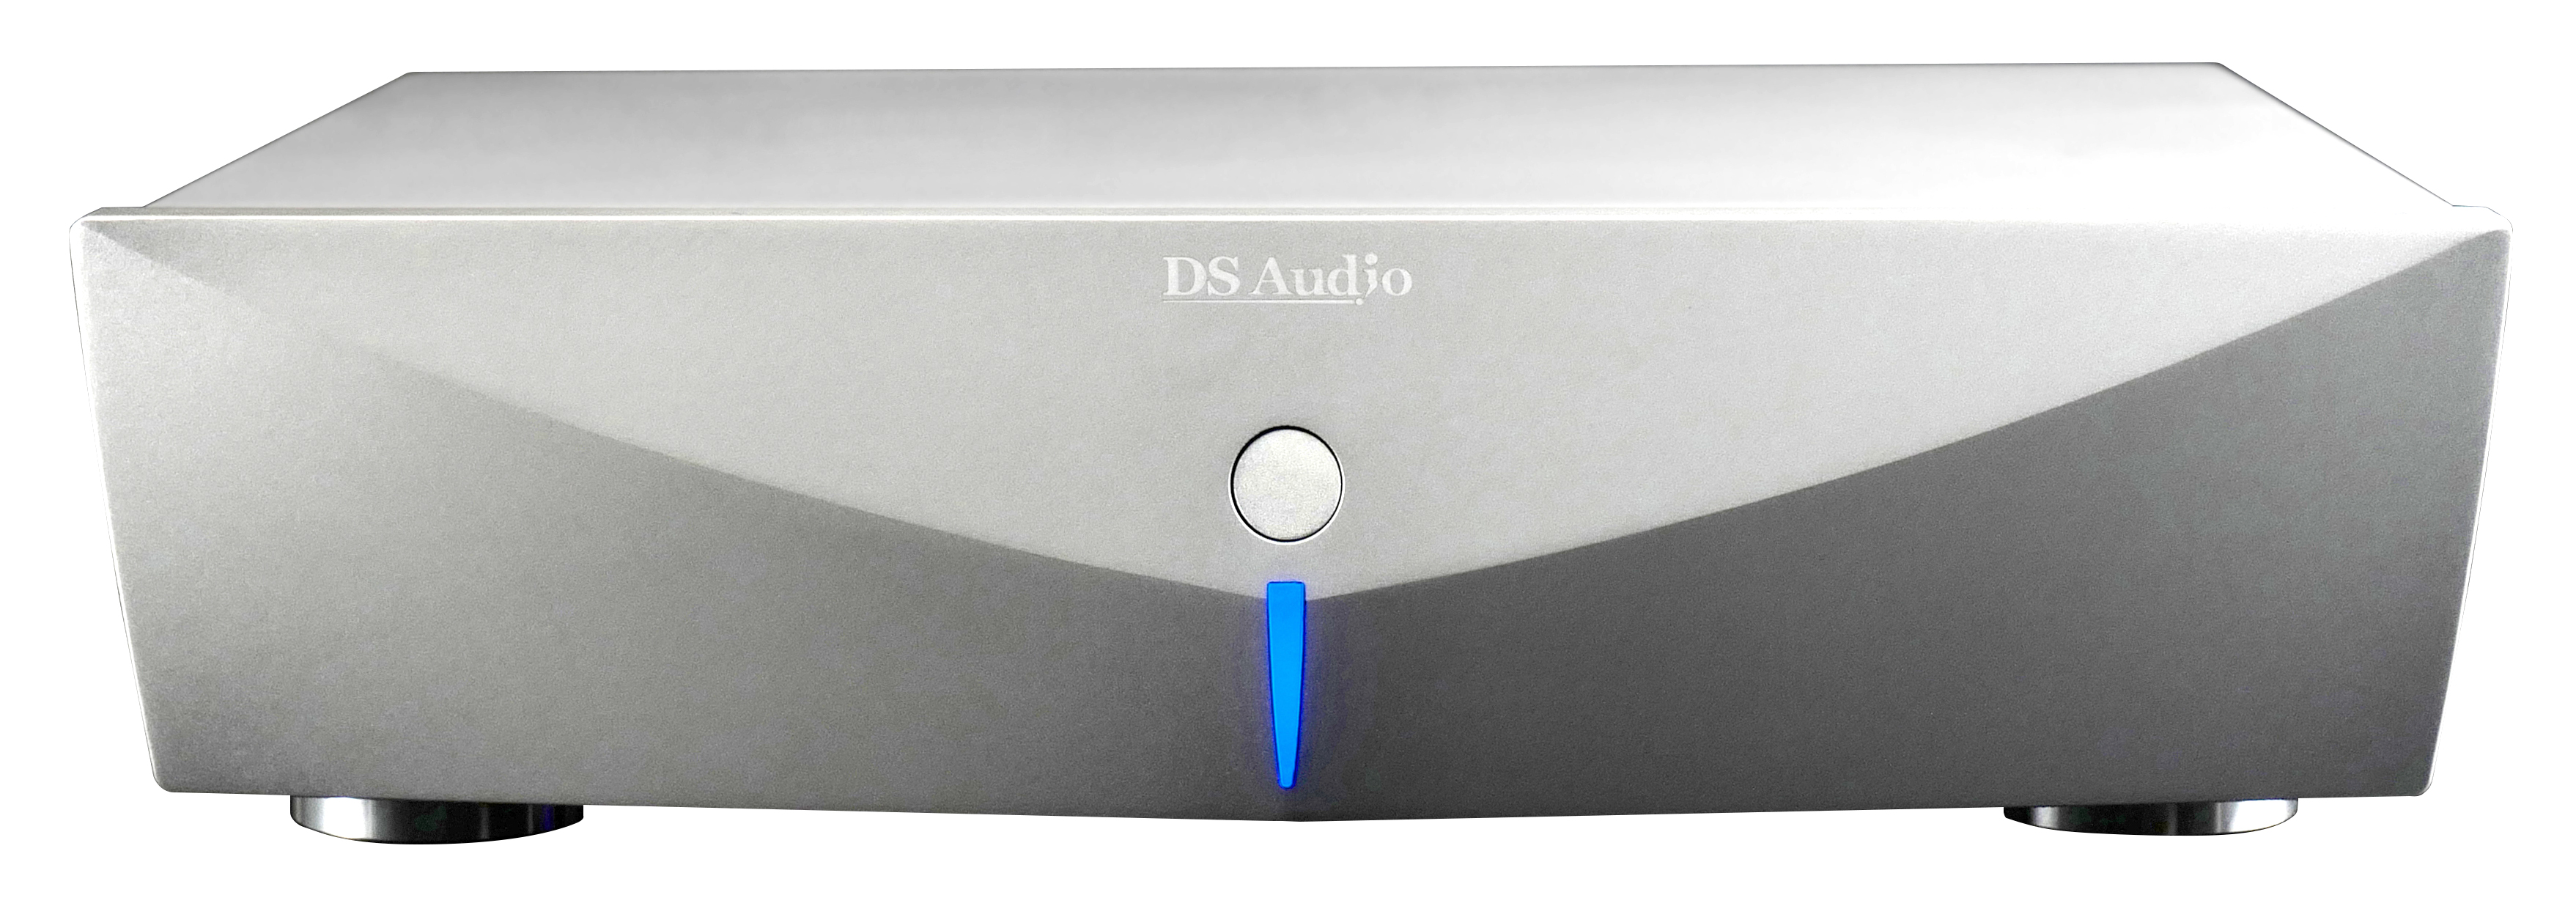 DS-Audio DS 003 EQ-Unit - Photooptischer Entzerrer / Versorgunseinheit